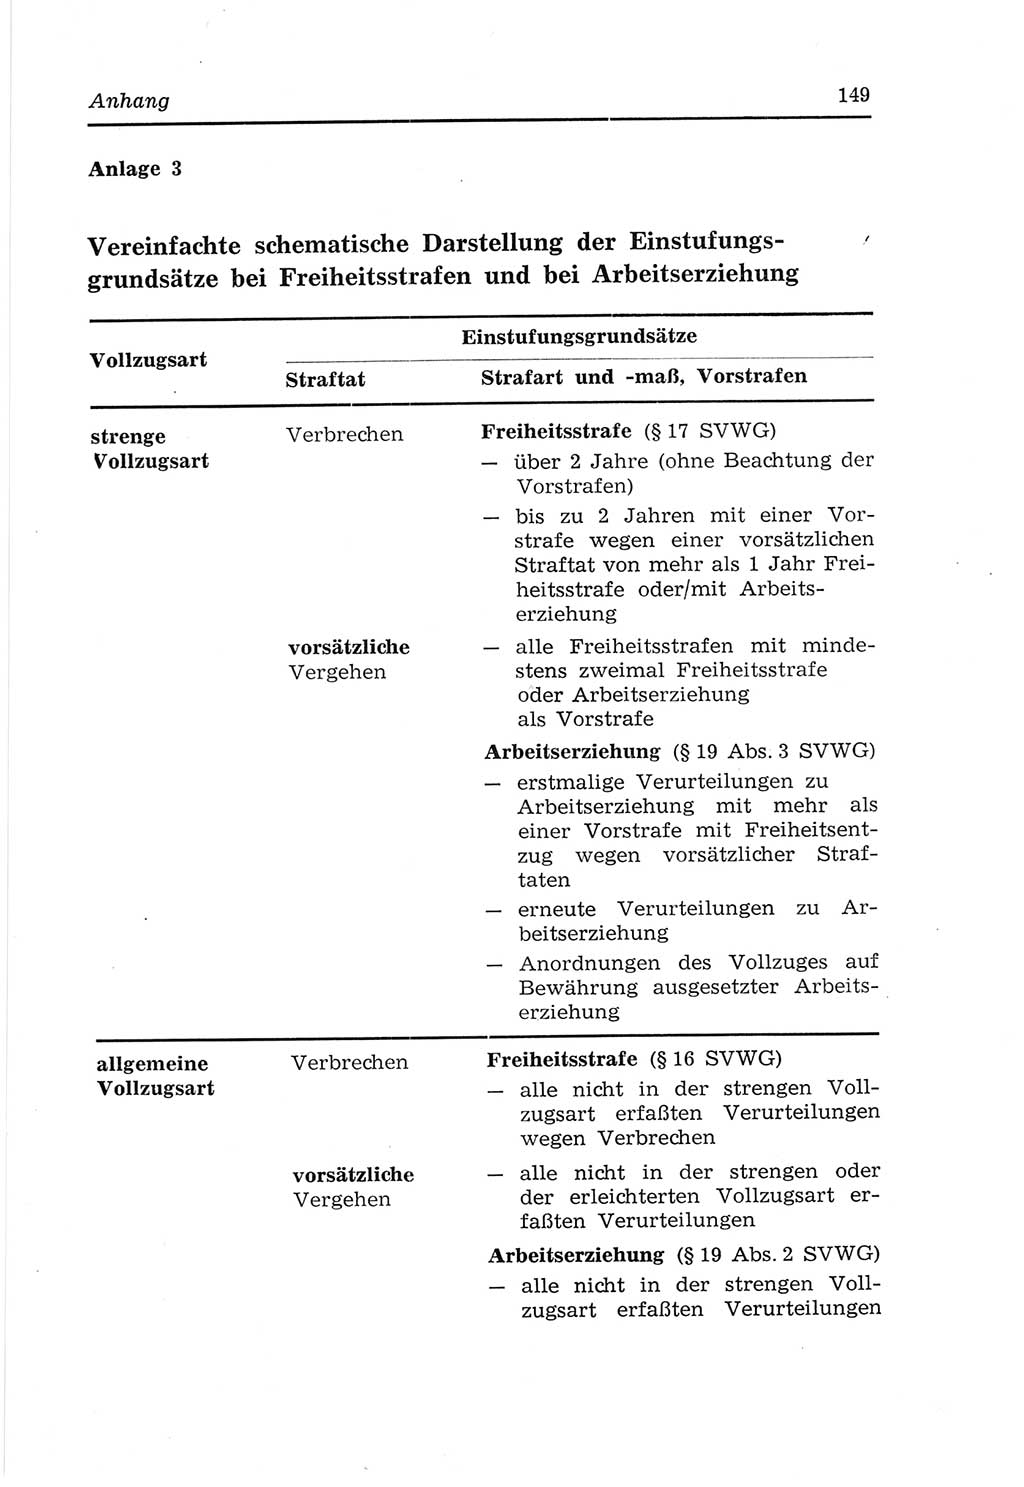 Strafvollzugs- und Wiedereingliederungsgesetz (SVWG) der Deutschen Demokratischen Republik (DDR) 1968, Seite 149 (SVWG DDR 1968, S. 149)